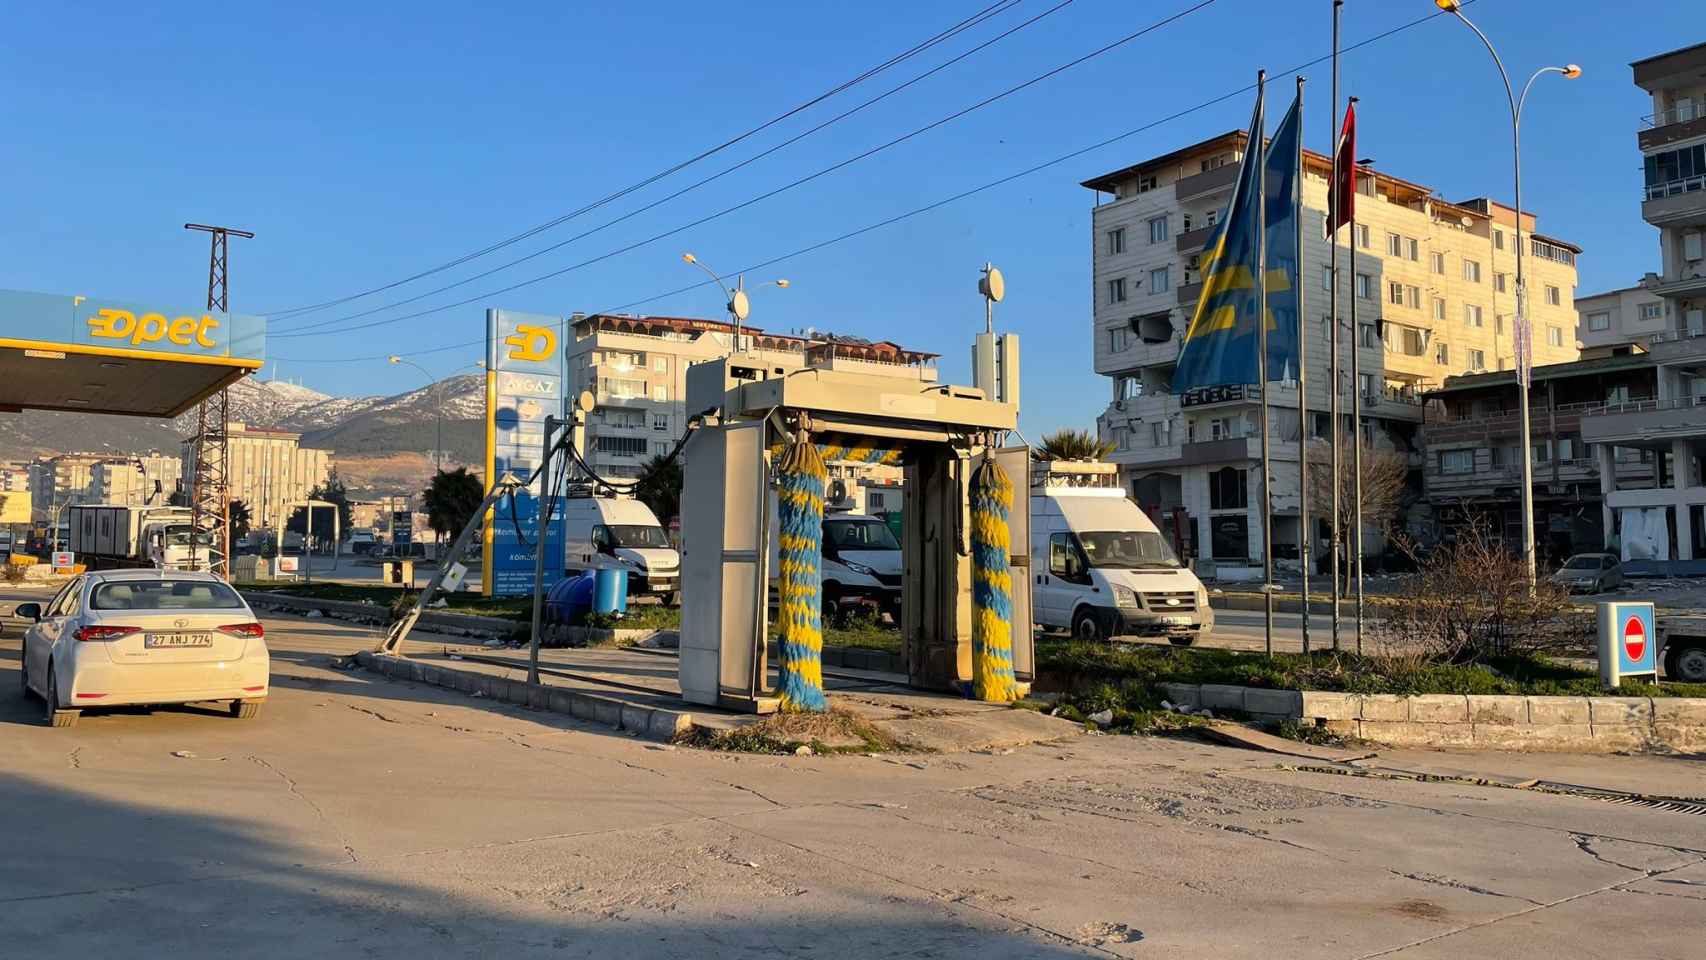 Gasolinera en la que trabaja Serhat, donde pueden verse tres furgonetas con antenas móviles portátiles en medio de la destrucción provocada por el terremoto.